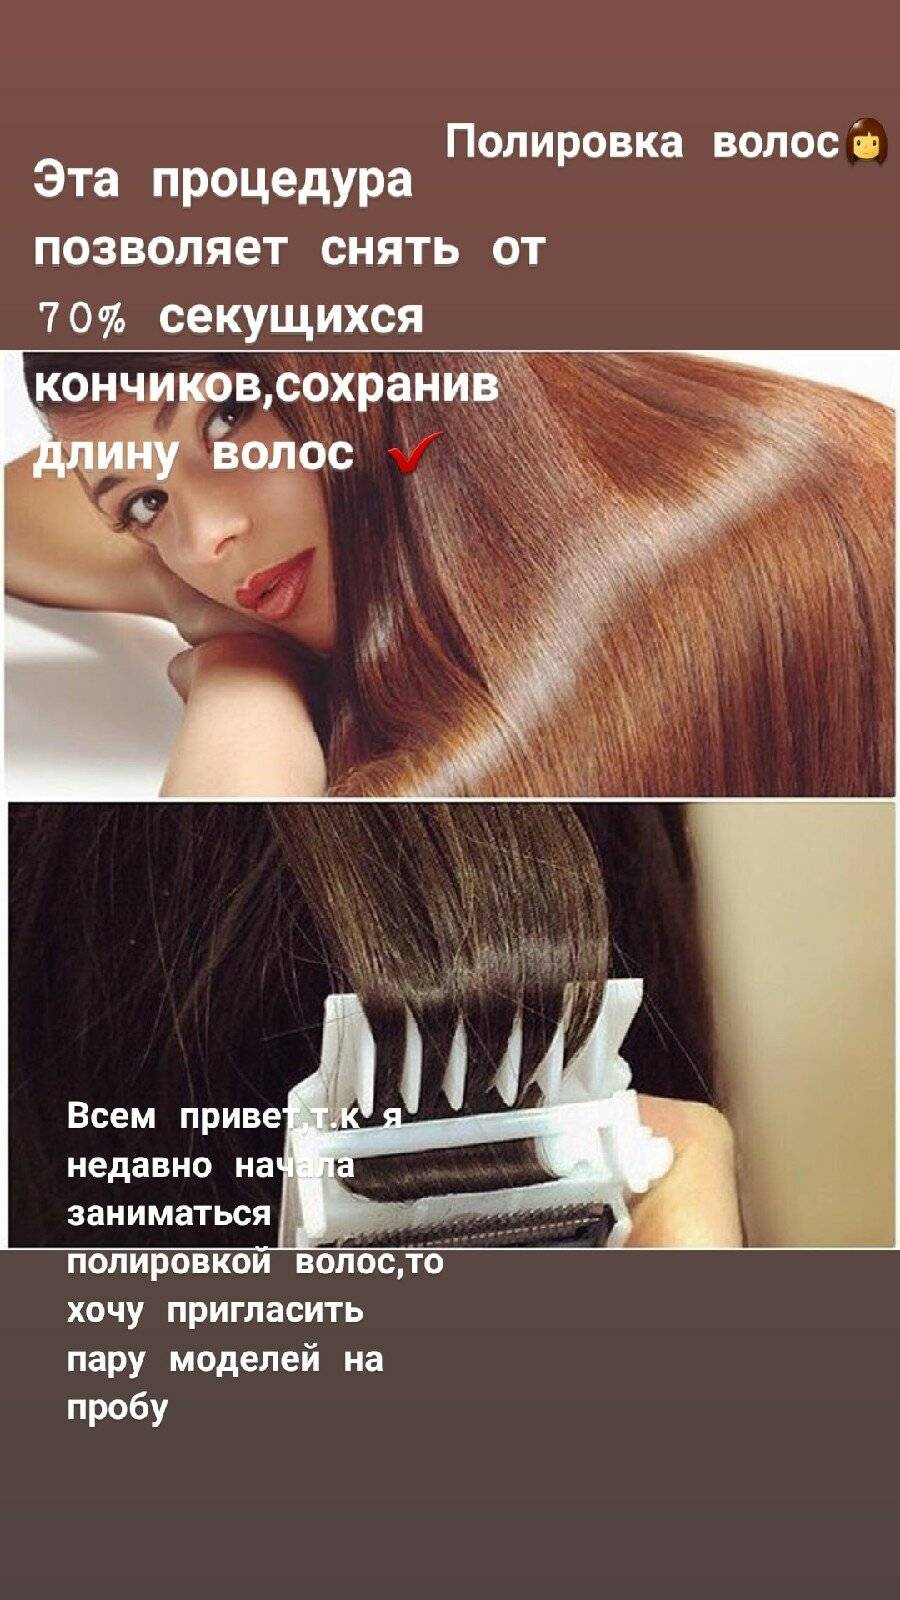 Сколько по времени делается полировка волос на средние волосы